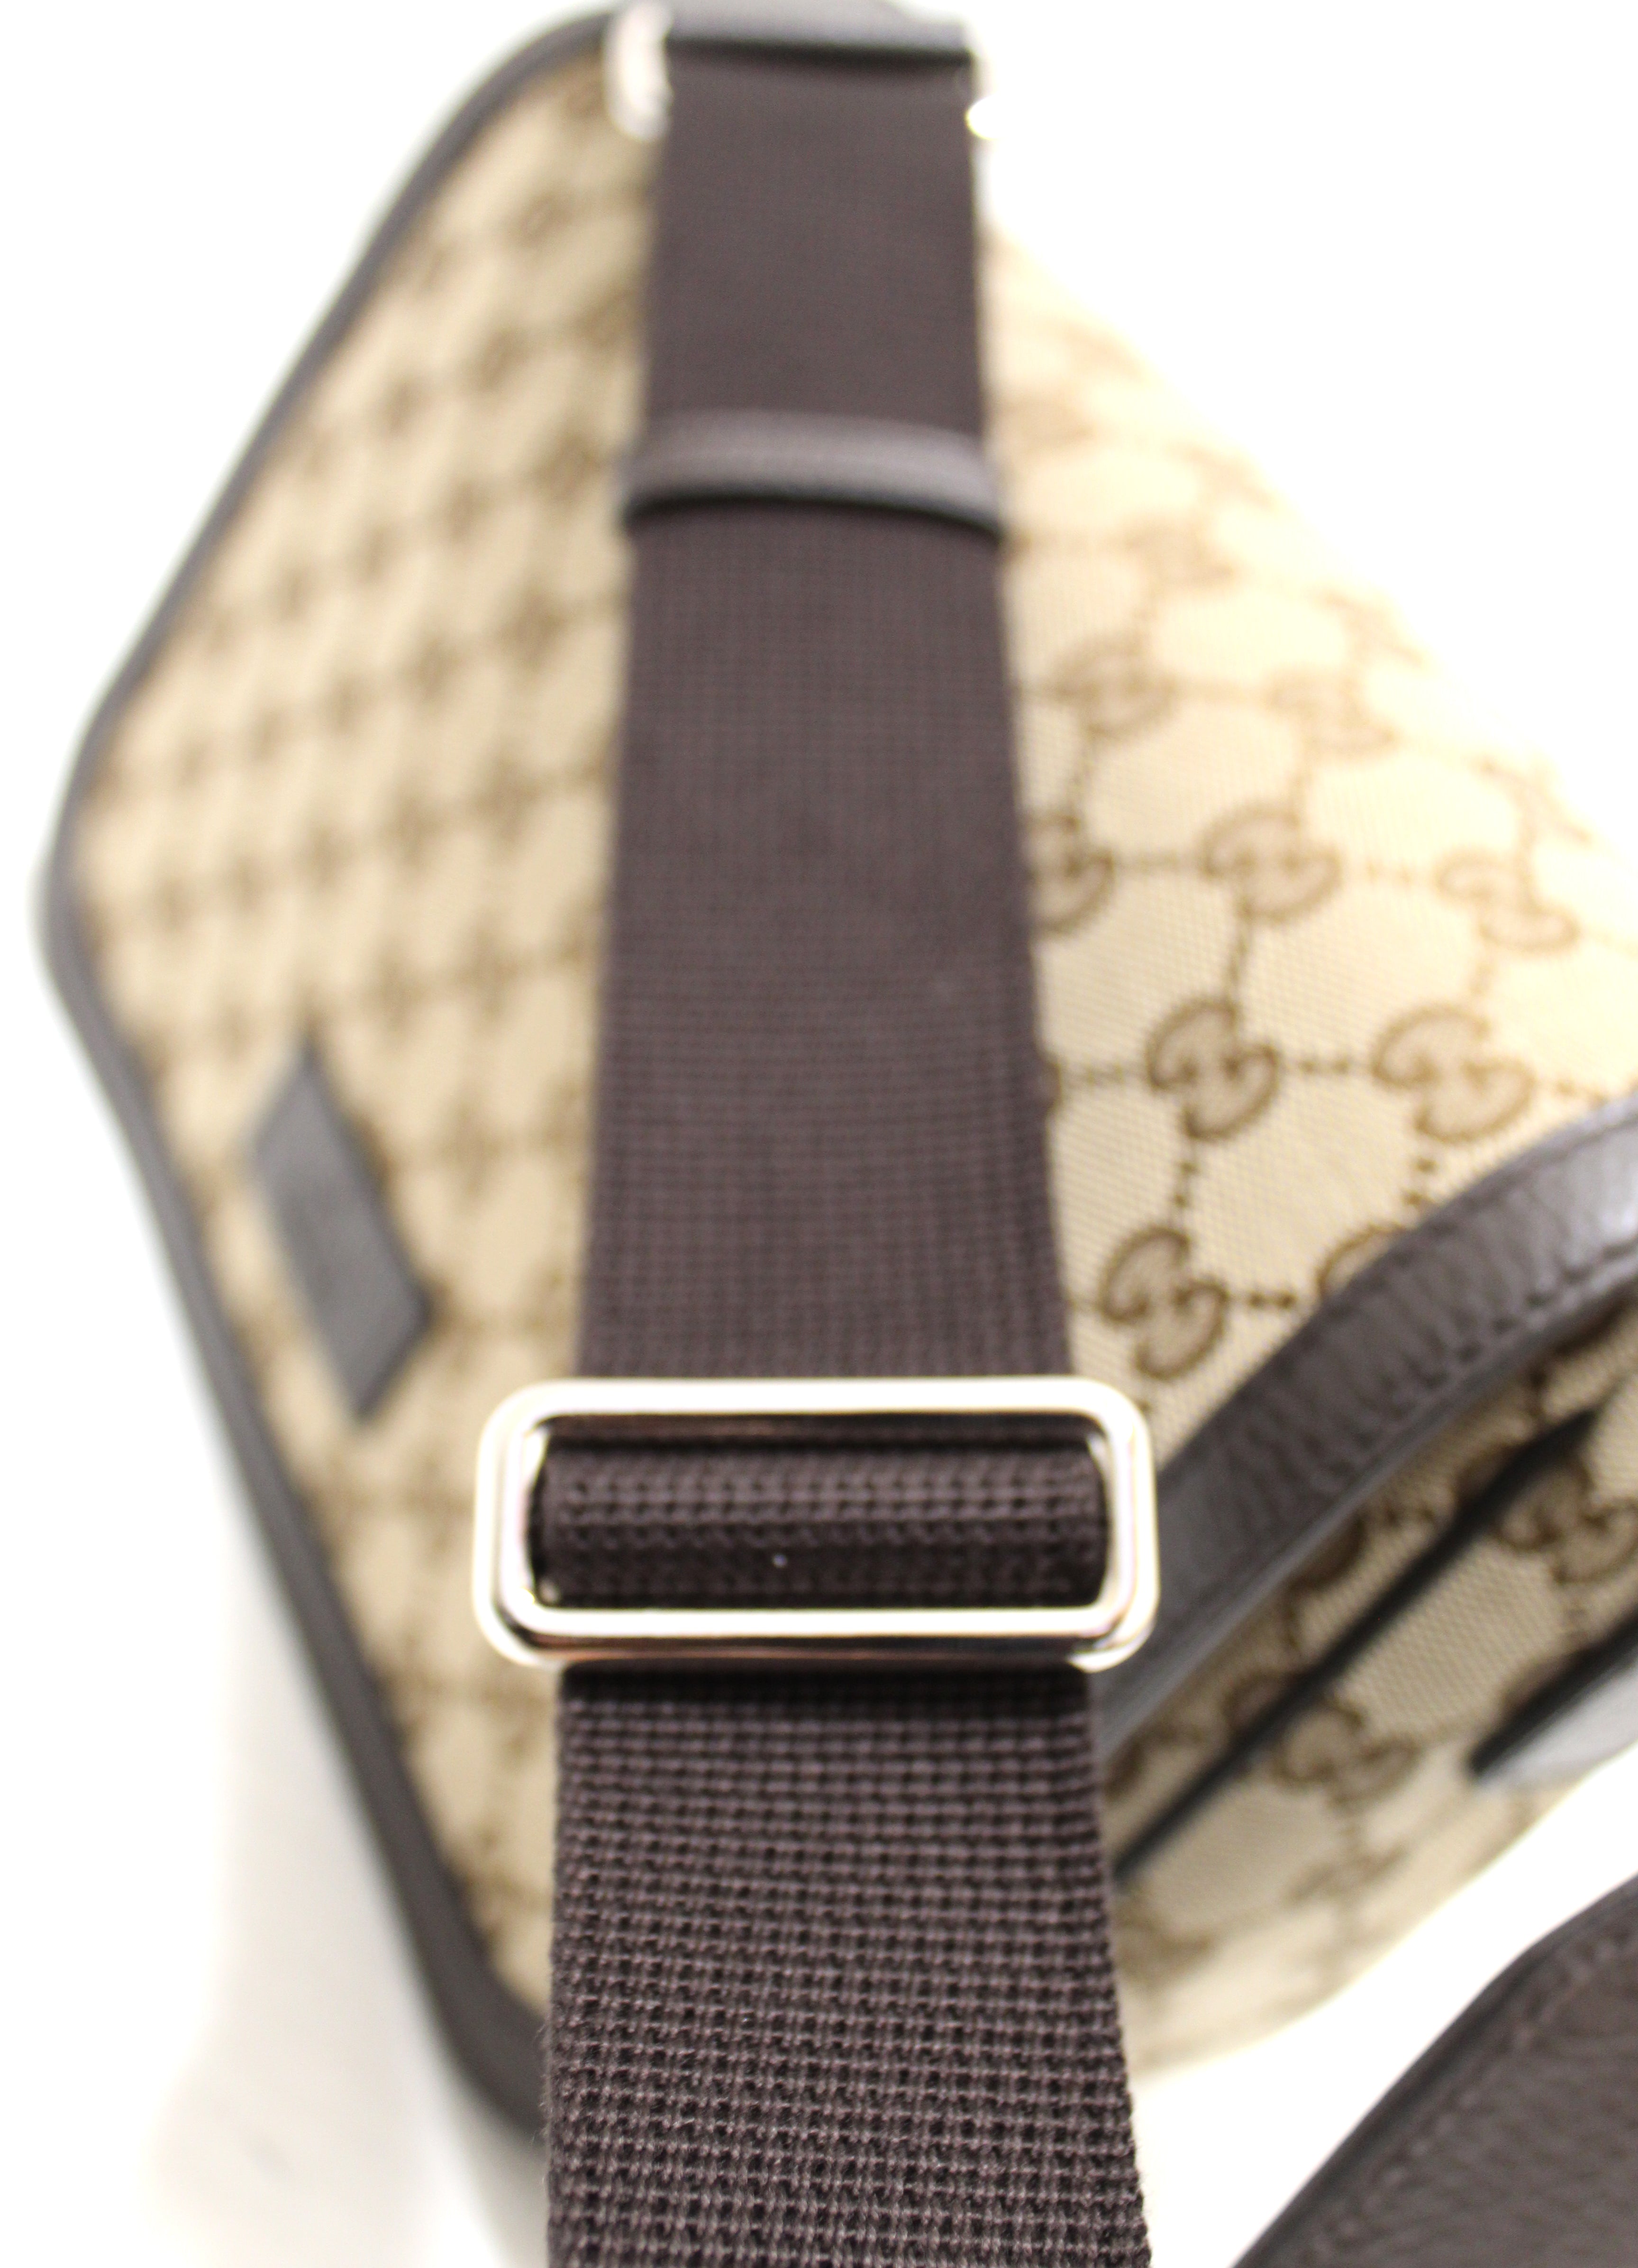 Gucci Messenger Bag Beige Man Fabric Original GG Mod. 449172 KY9KN